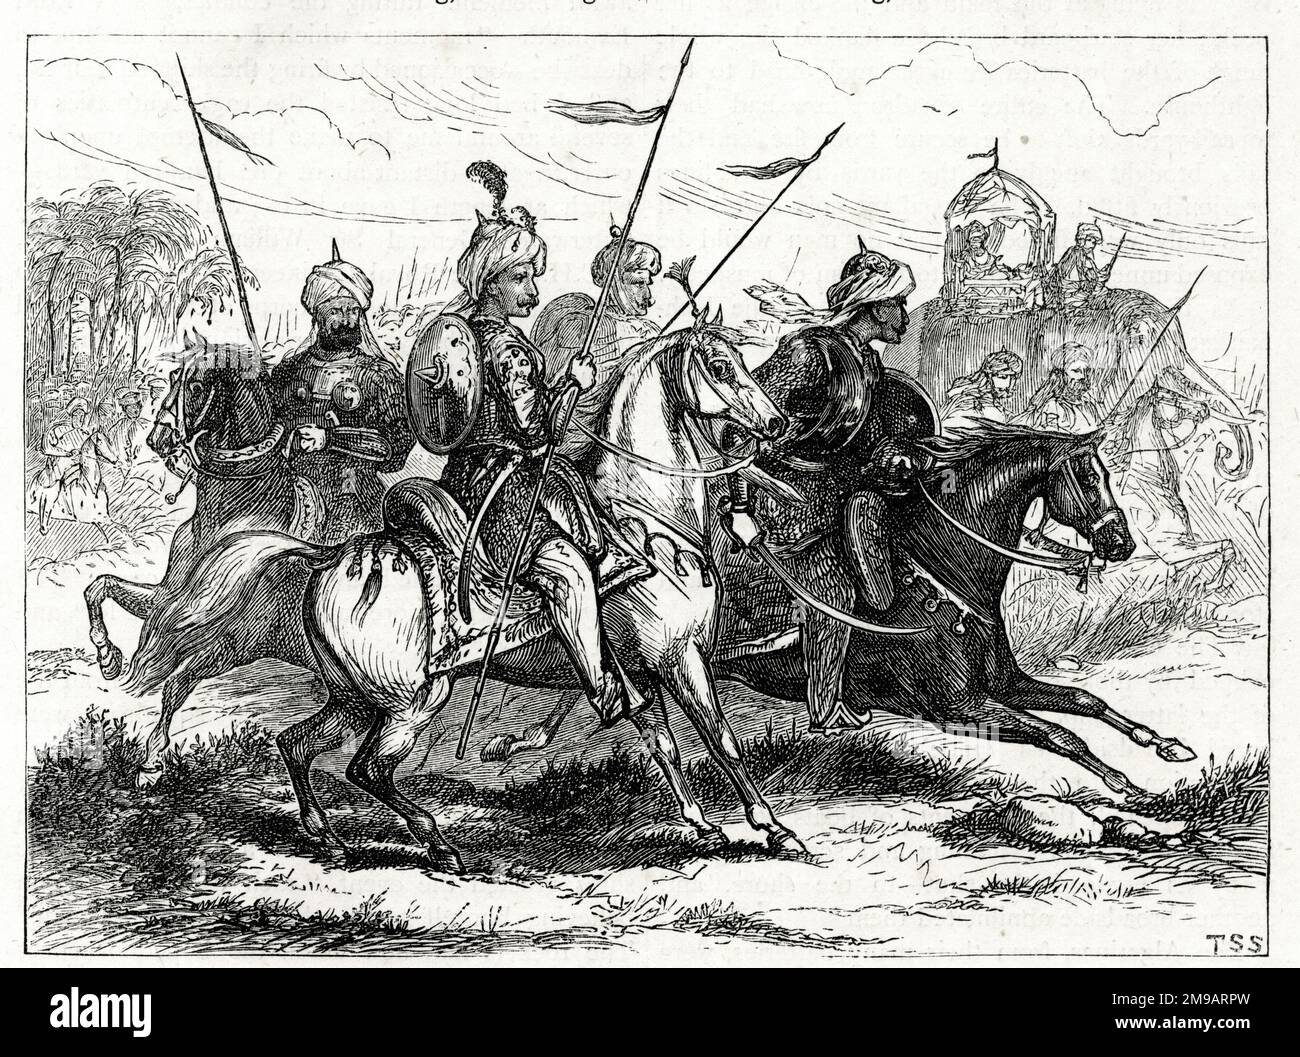 Gruppe von Marathas während des dritten Anglo-Maratha-Krieges (1817-1819), zwischen der British East India Company und dem Maratha Empire, Indien. Stockfoto